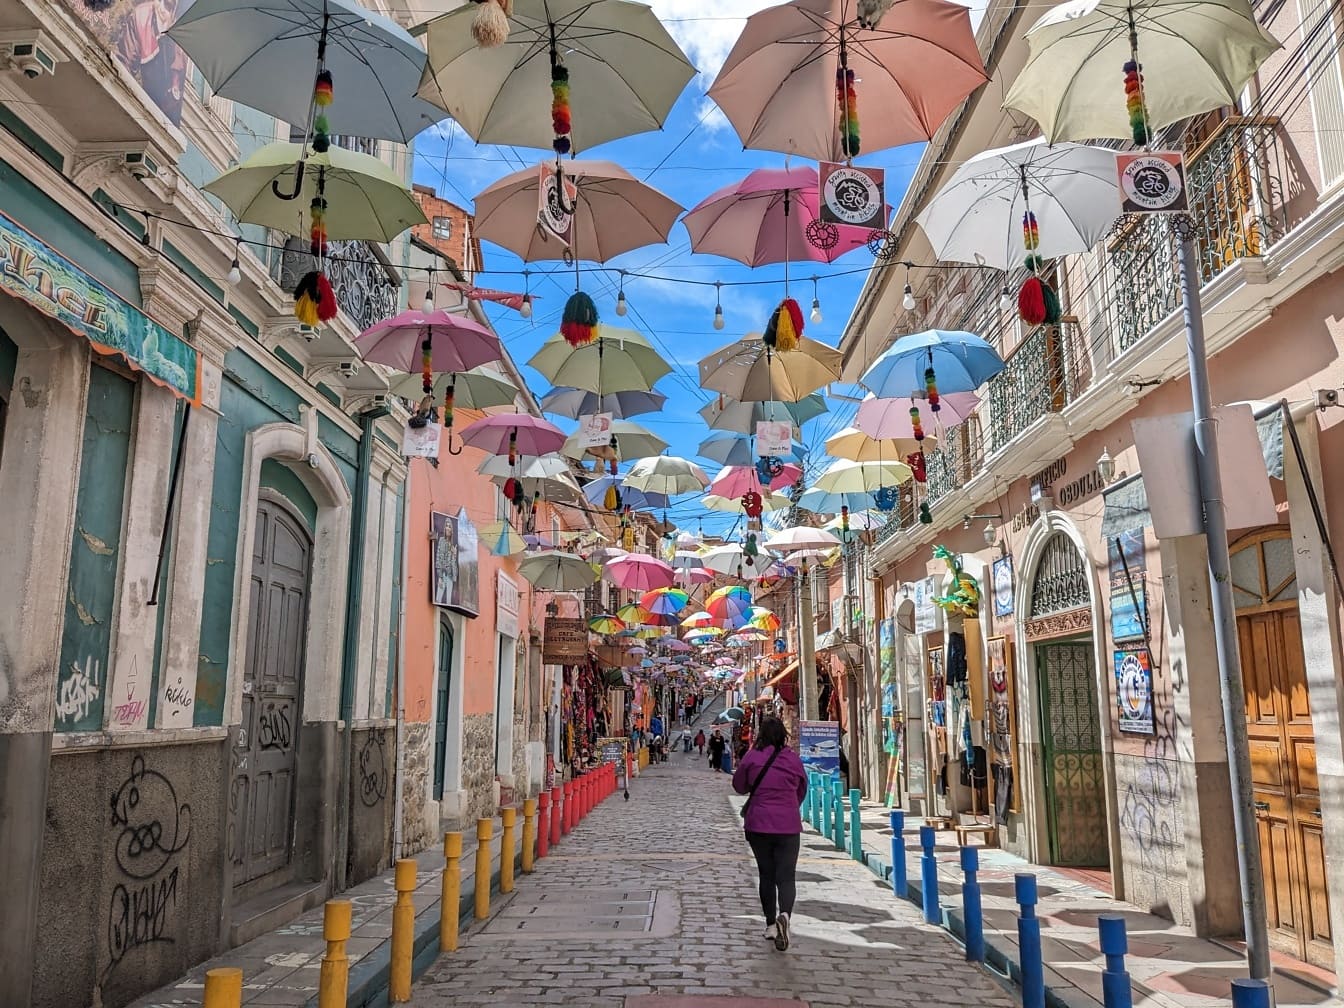 Utca színes napernyőkkel lóg, híres turisztikai attrakció